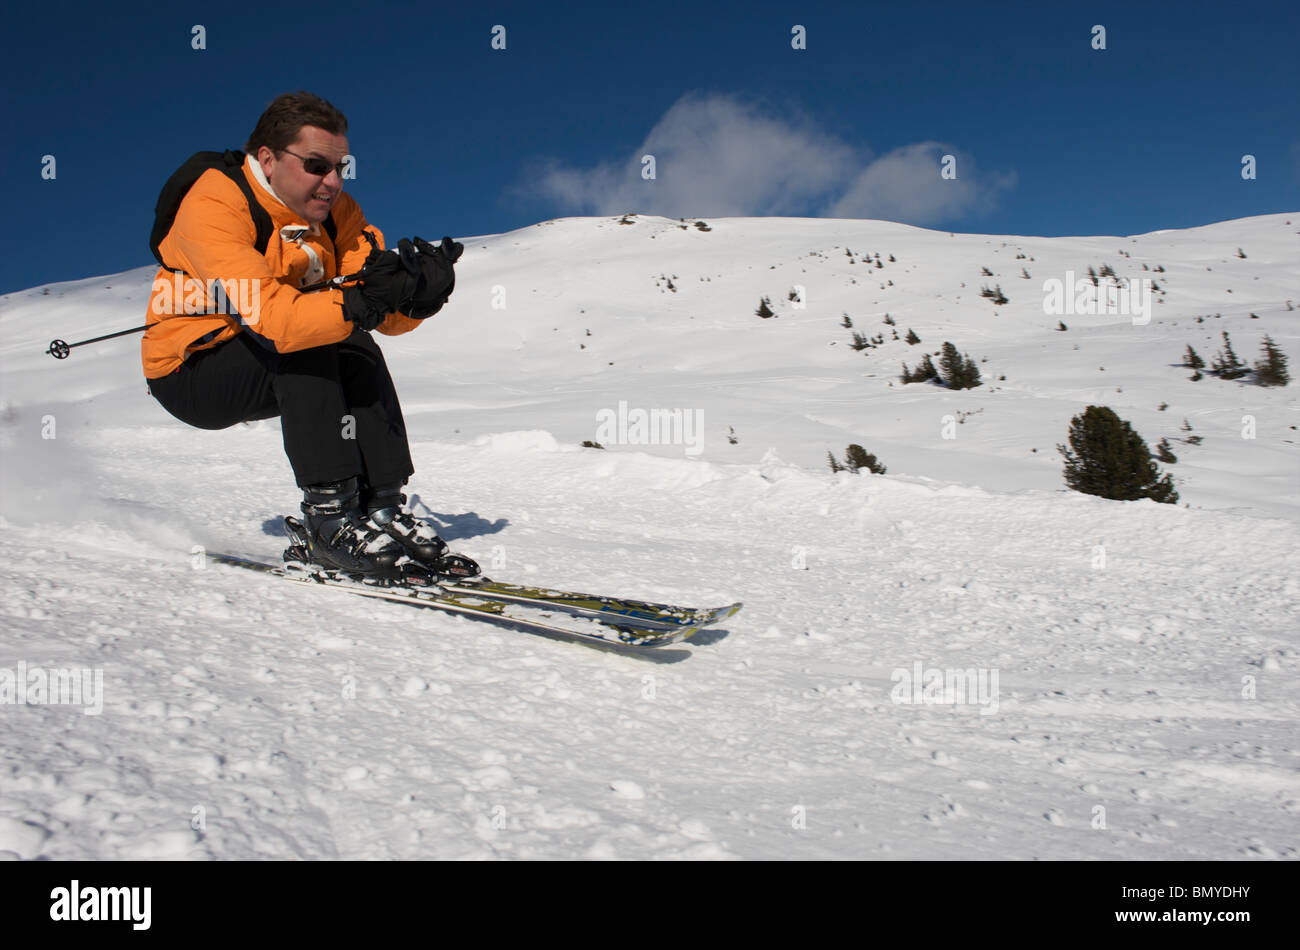 Konigsleiten, skier picking up speed Stock Photo